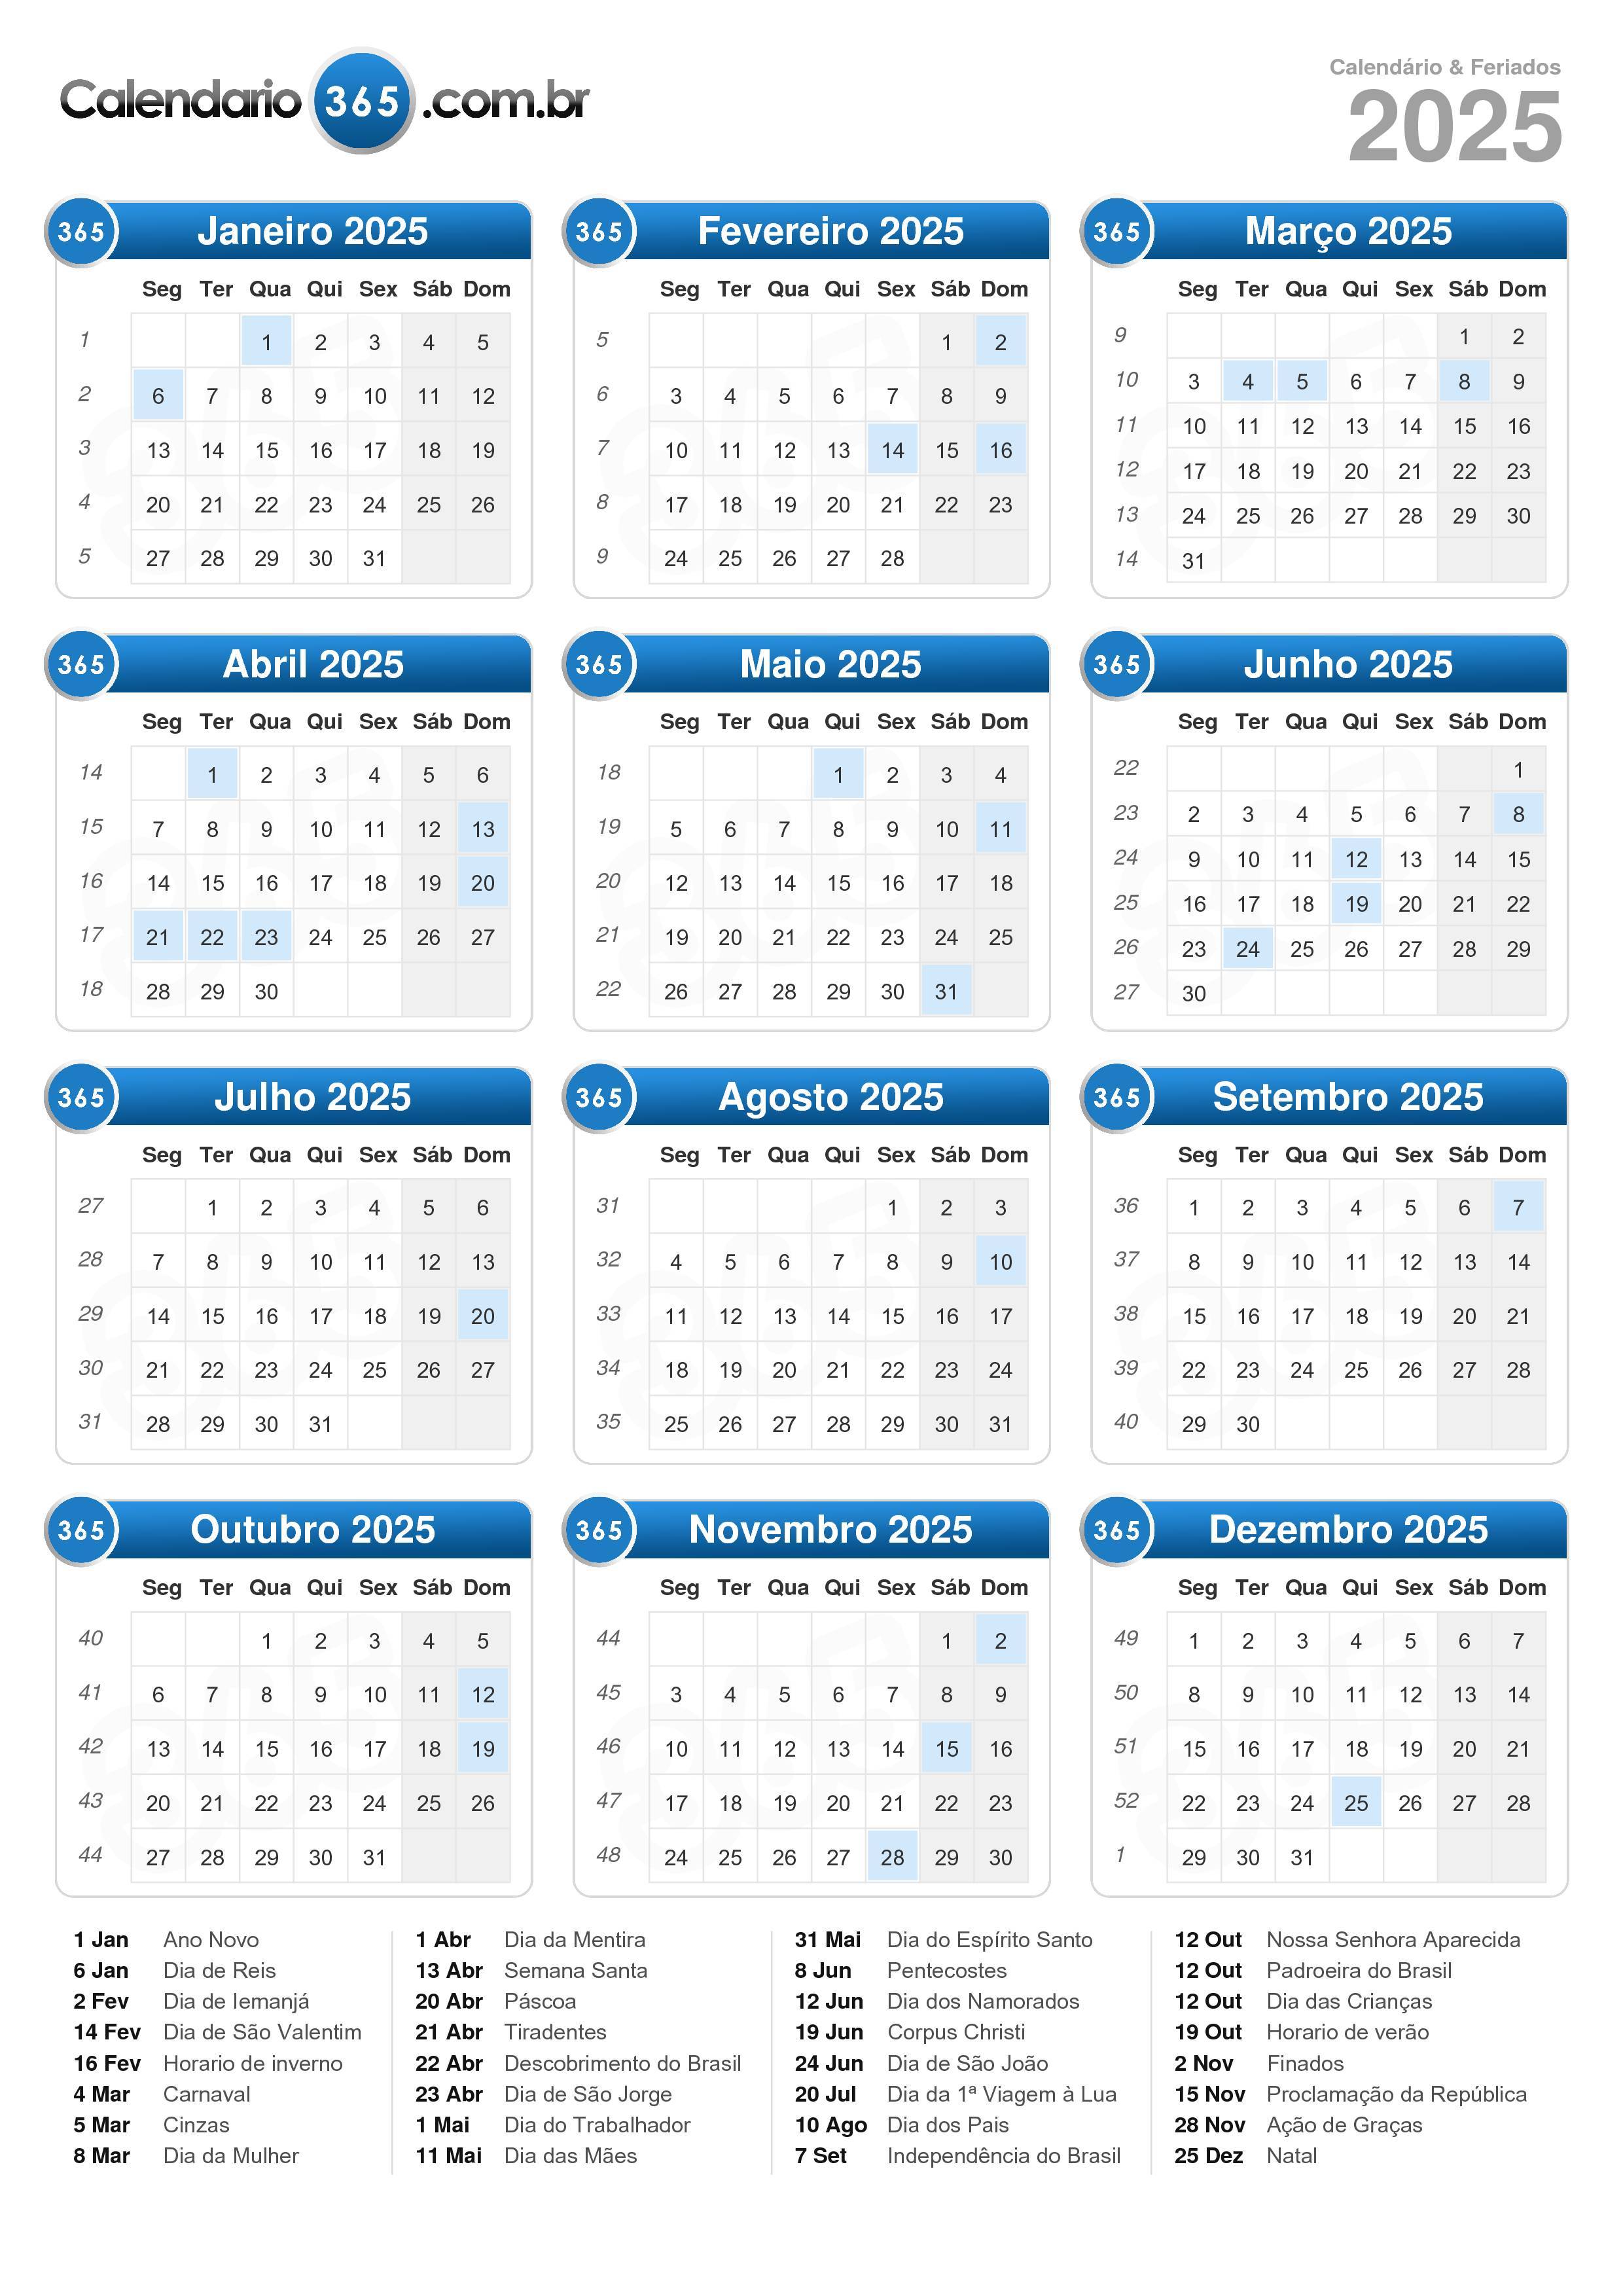 Calendario 2025 01 Upc 